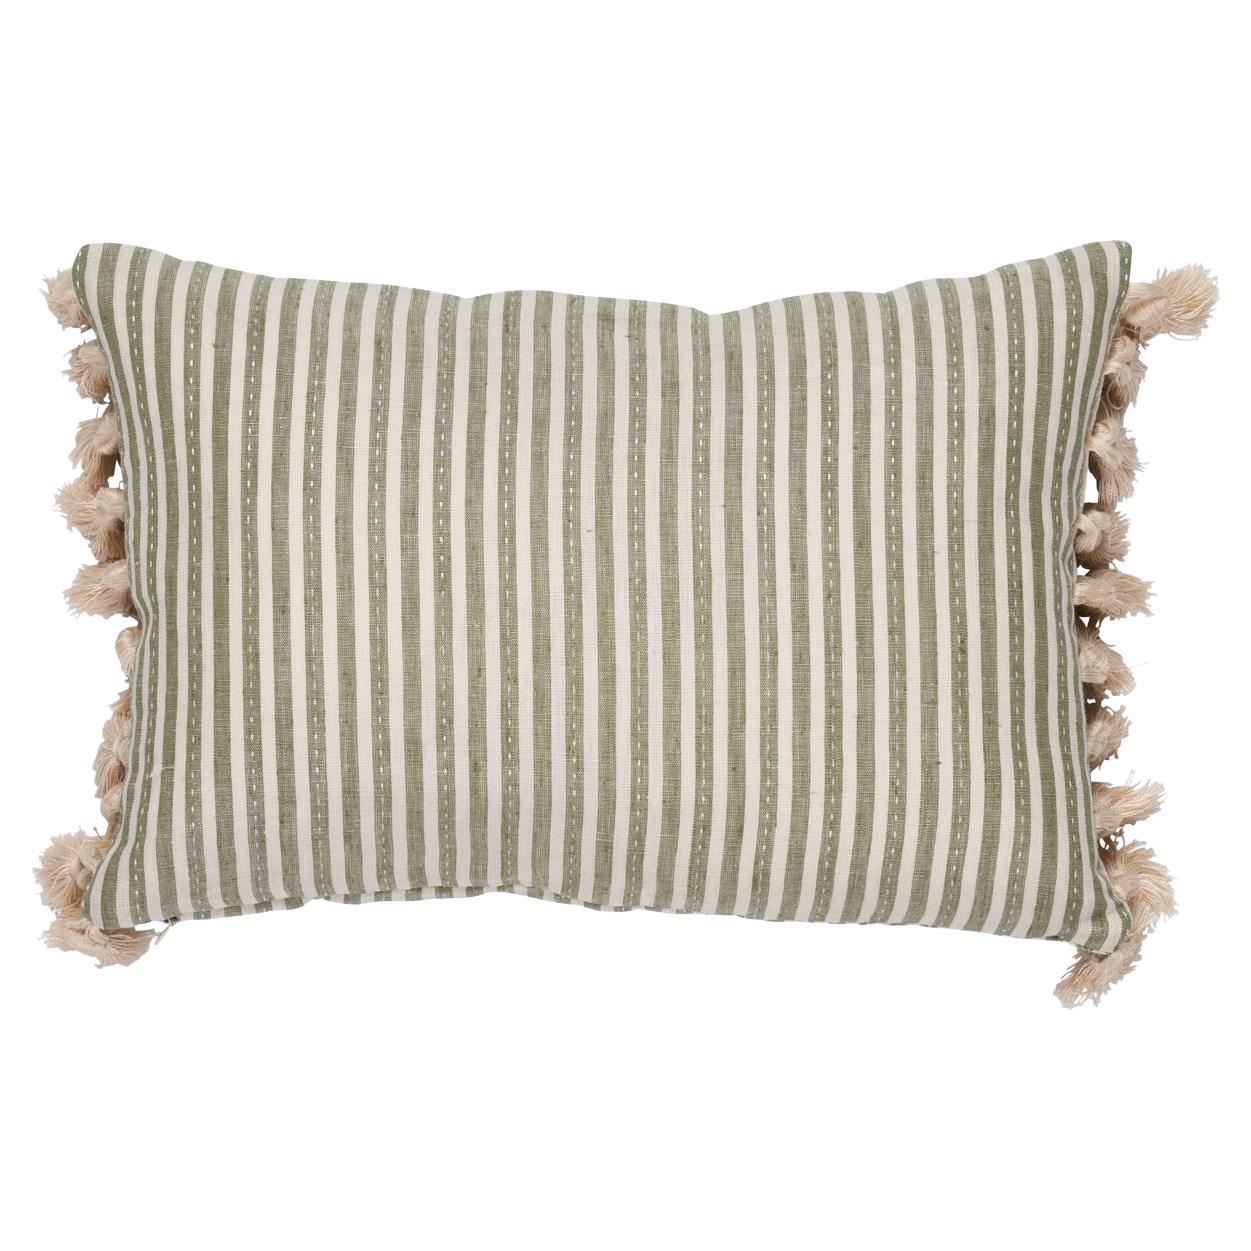 Schumacher Mathias Ticking Stripe 16x12" Pillow in Sage For Sale